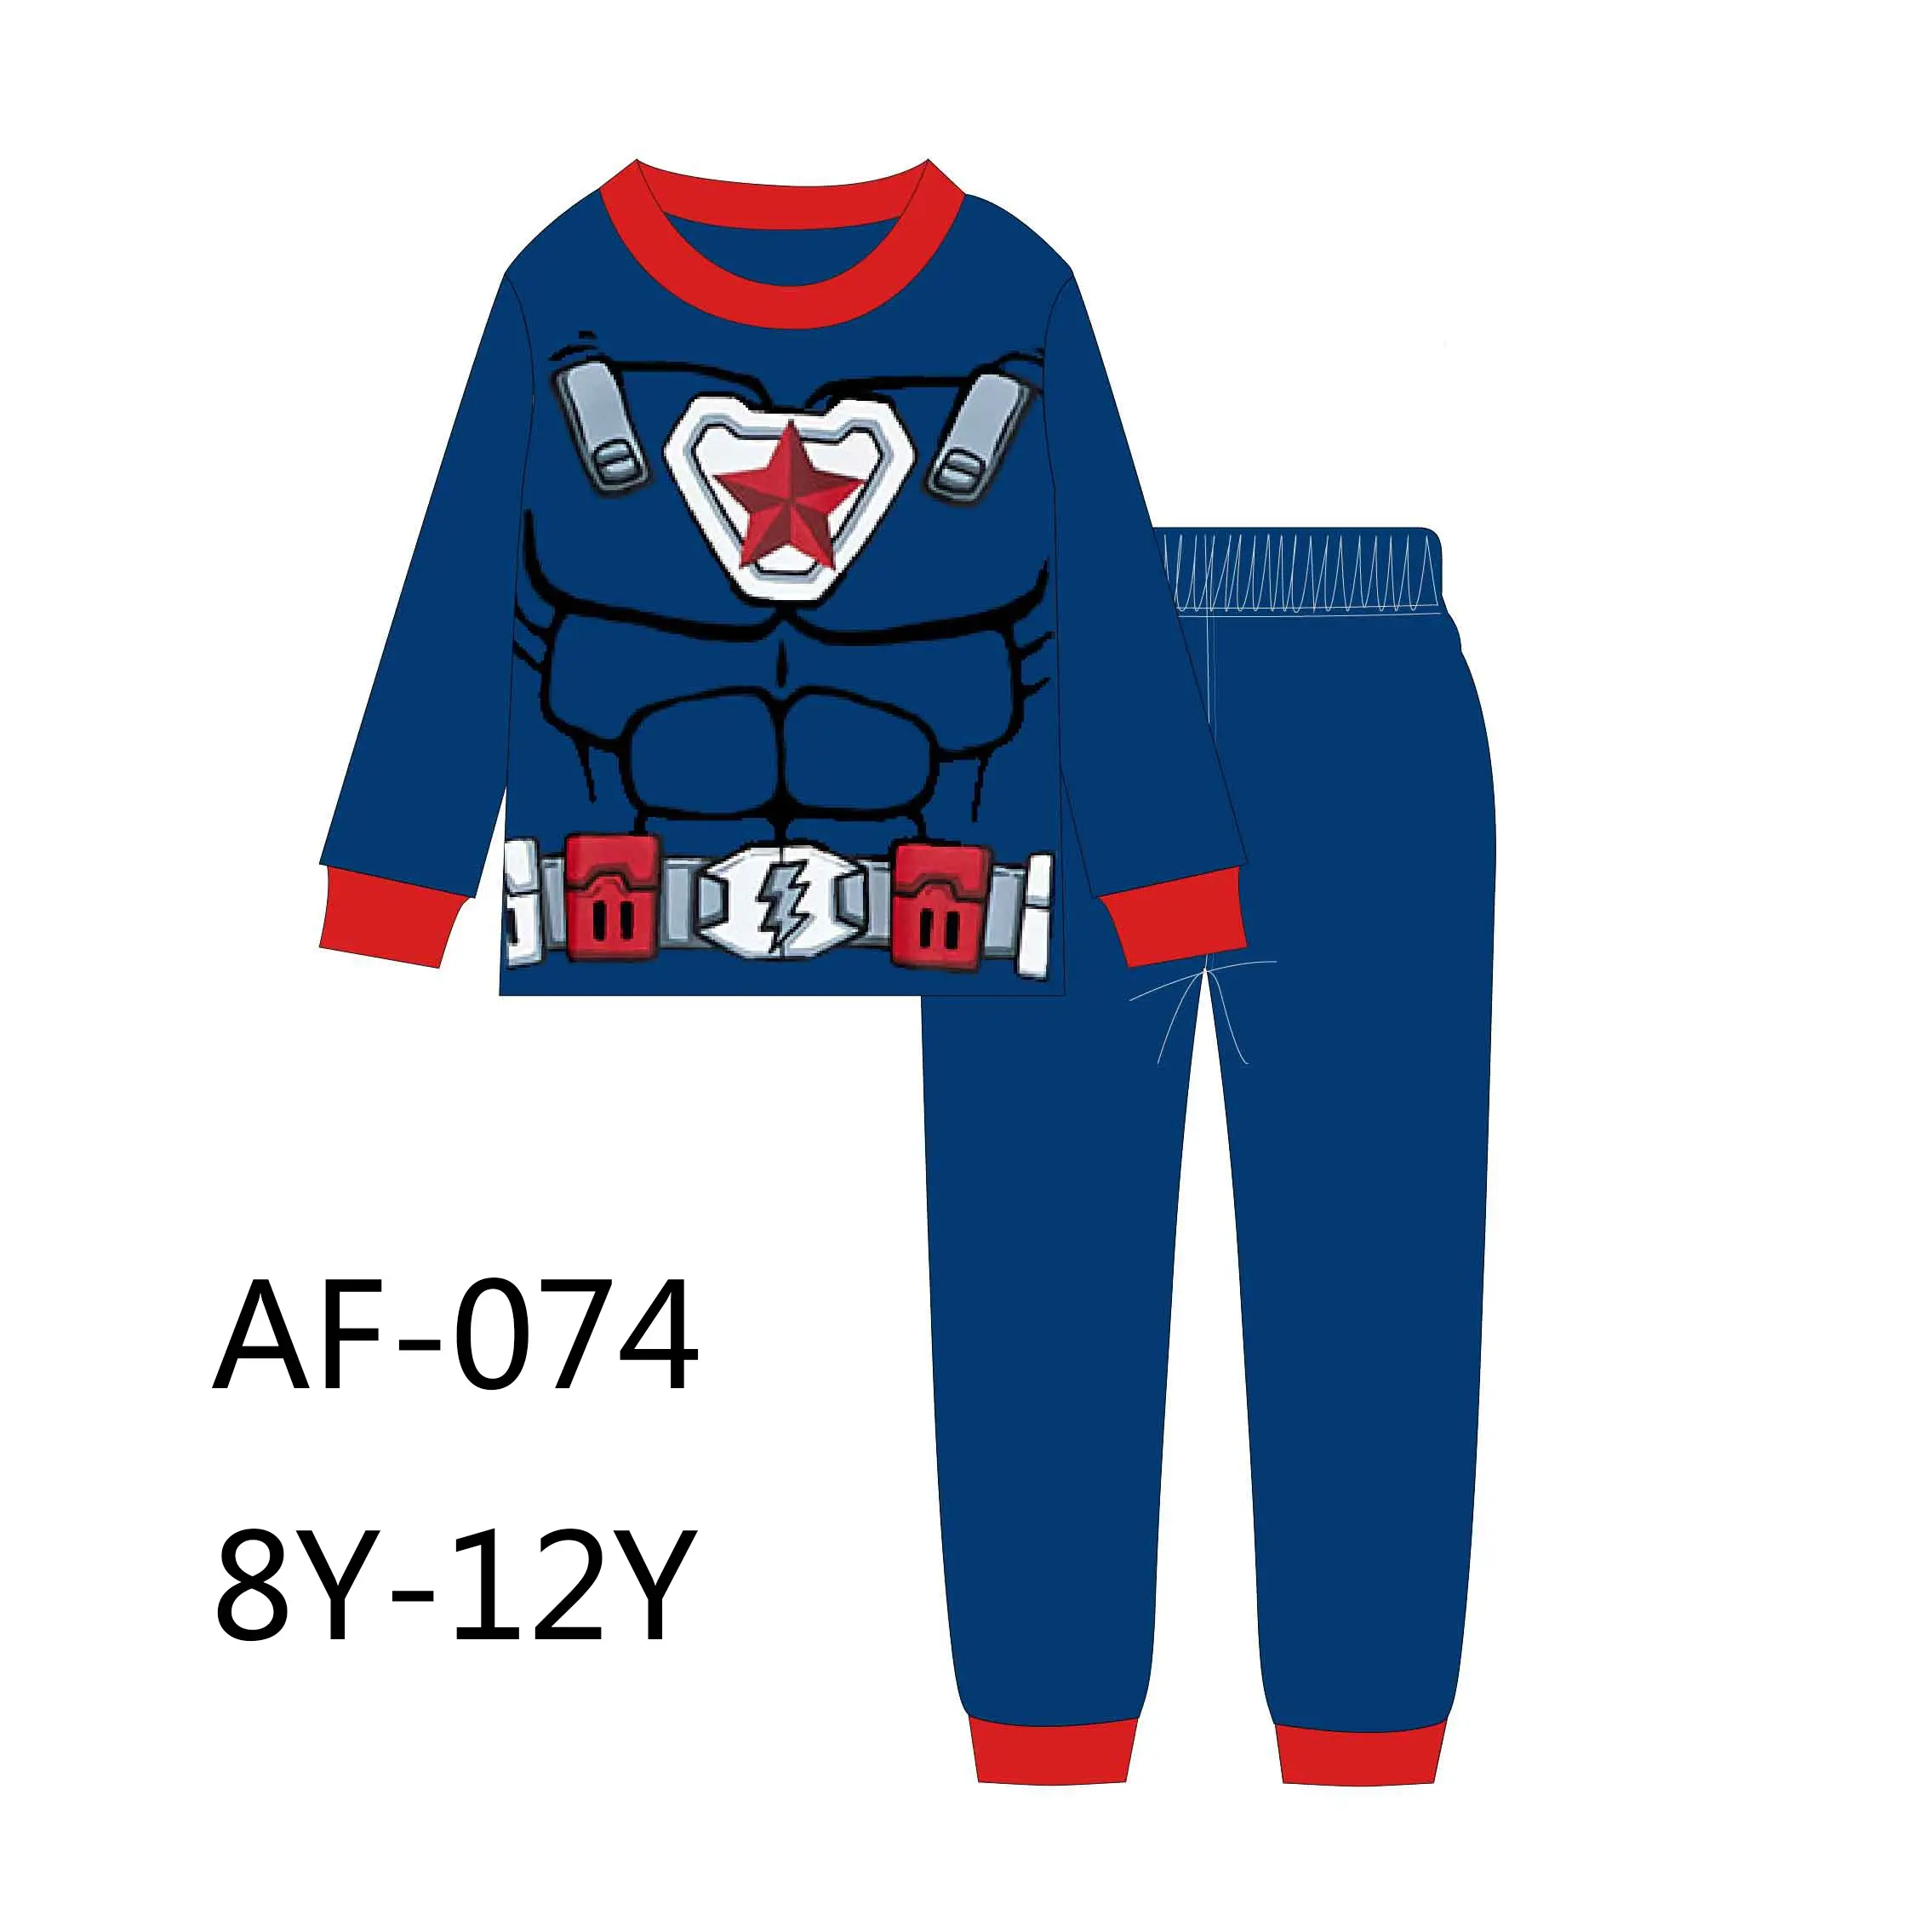 Conjuntos de ropa de dormir para bebés, pijamas de algodón, marca caluby, pijamas de dibujos animados para niños de 8 a 12 años